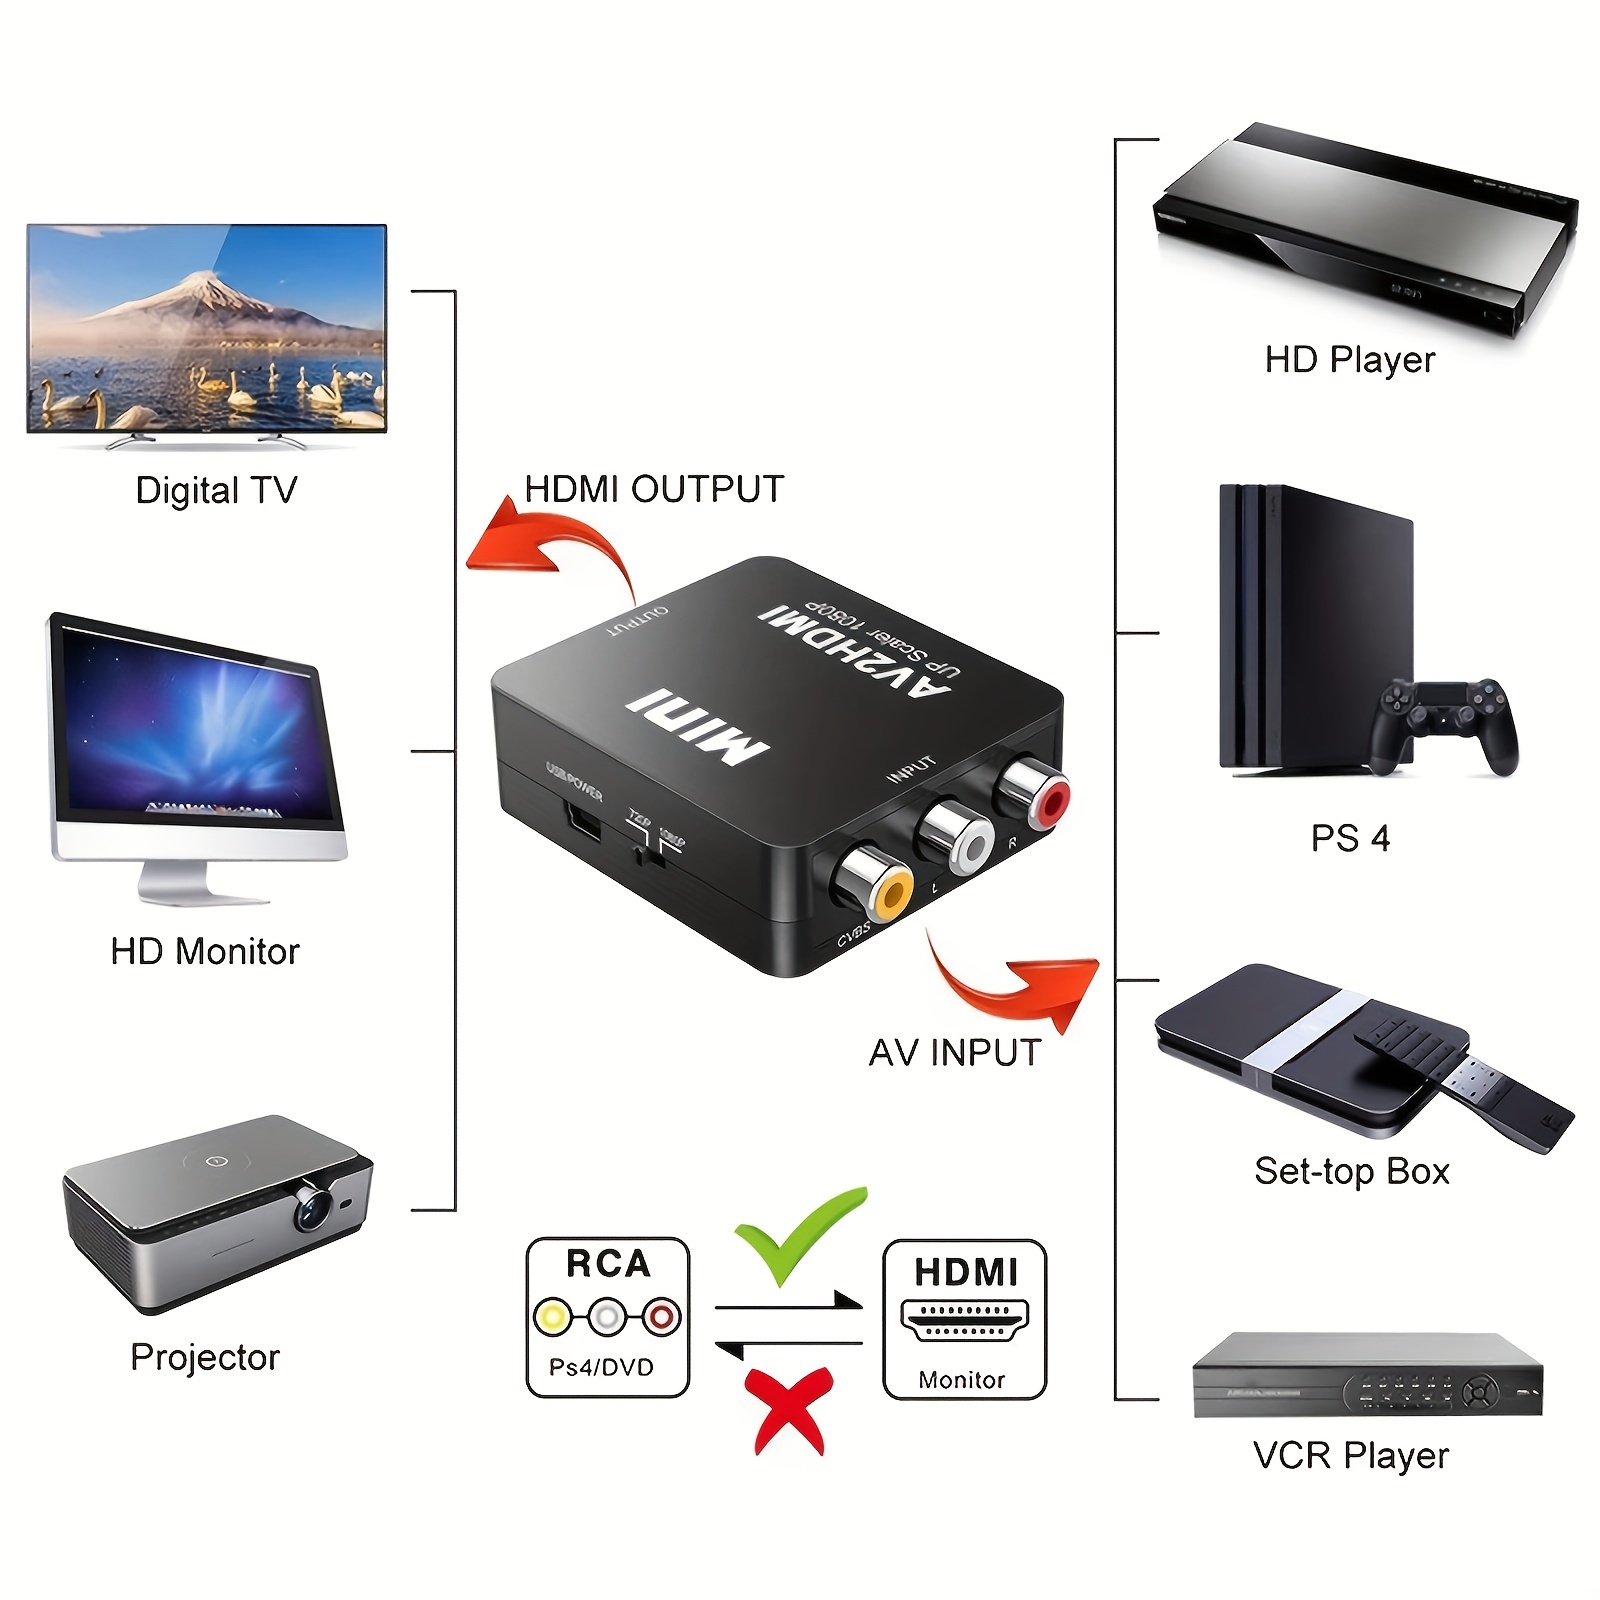 HDMI to RCA 変換コンバーター 変換アダプタ テレビ プロジェクター パソコン コンパクト USB給電 NTSC